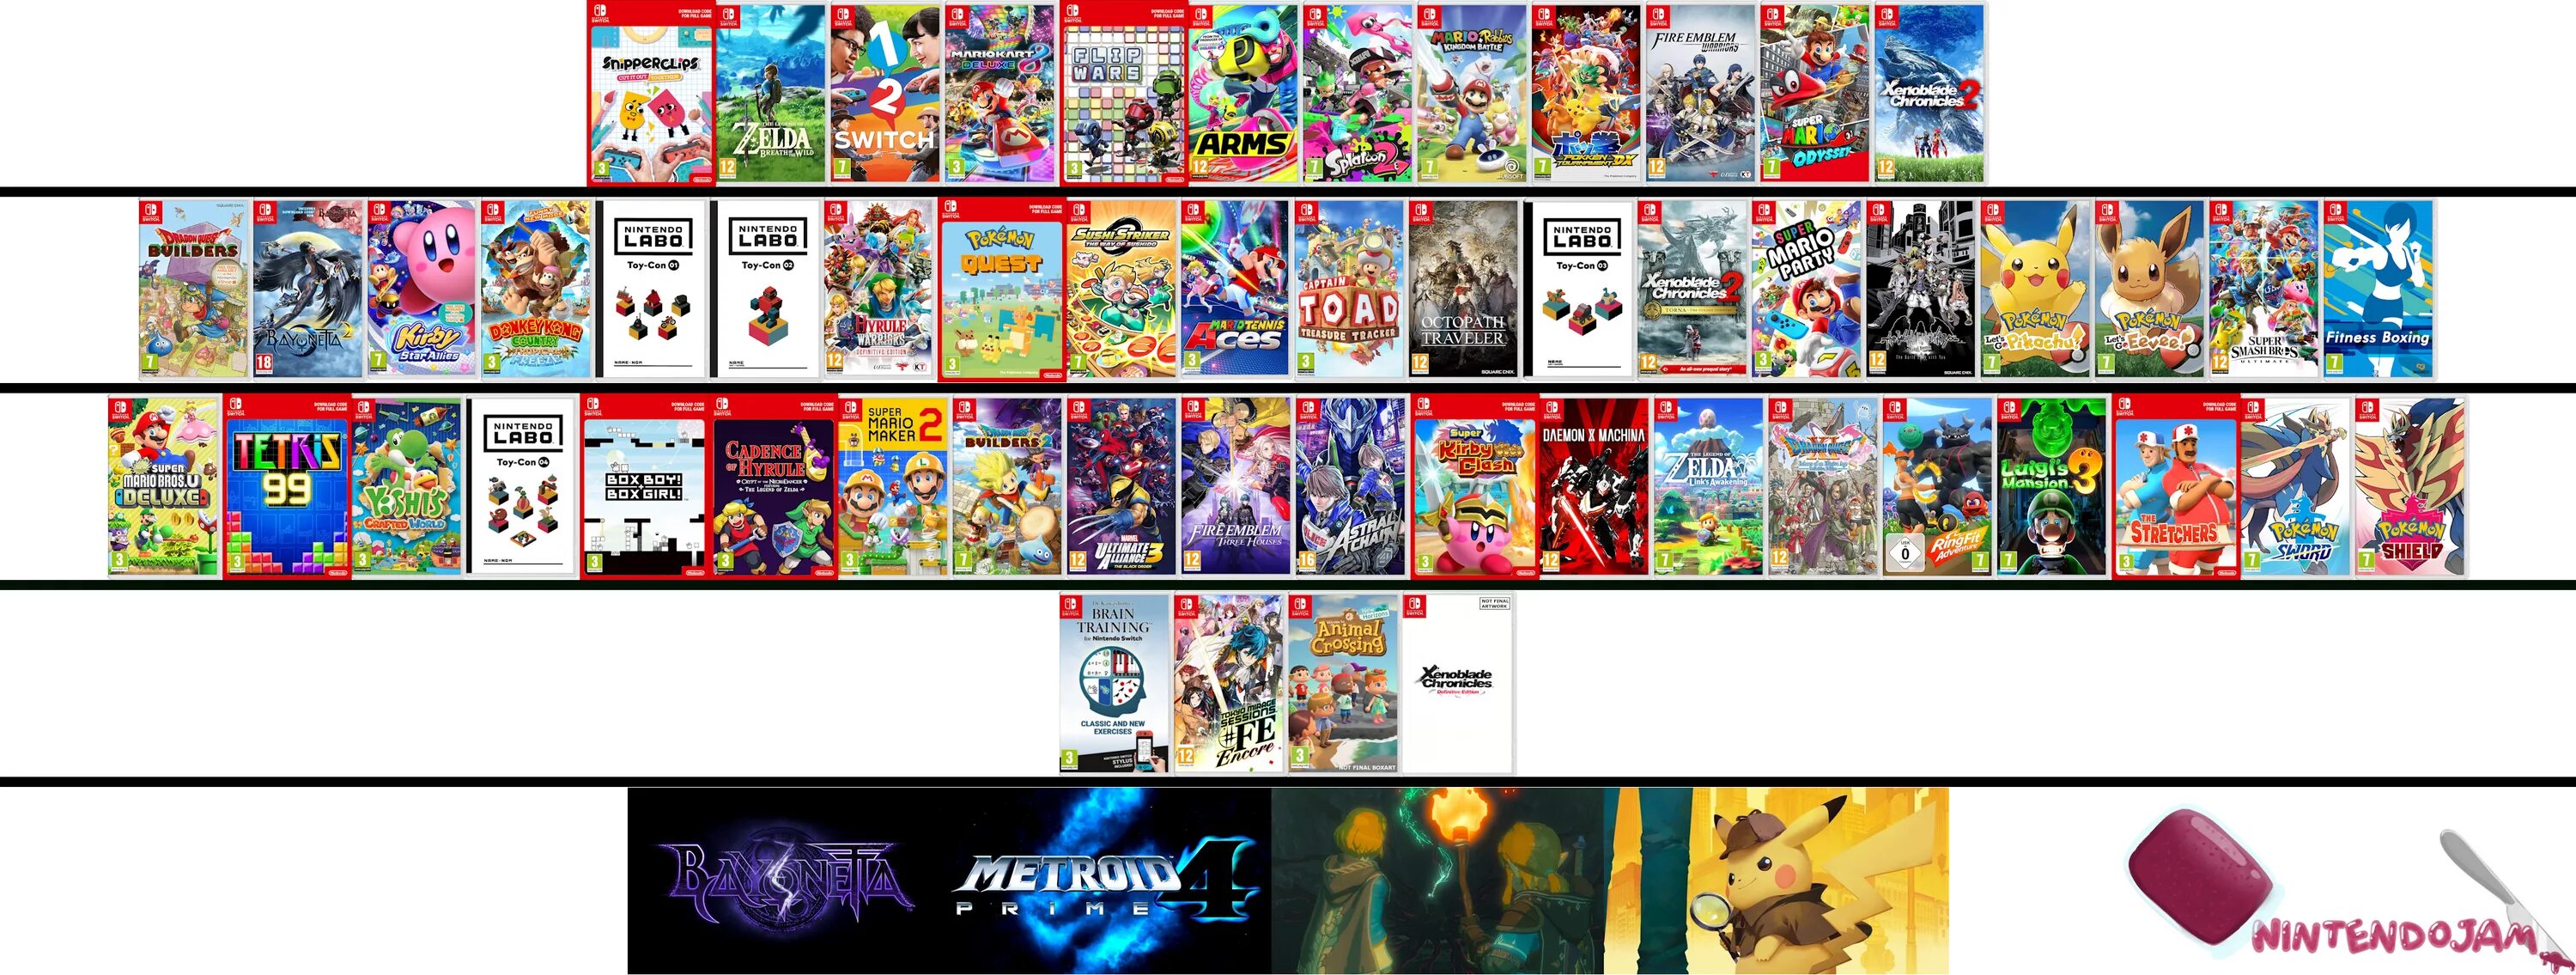 Нинтендо свитч игры список. Nintendo Switch games 2020. Нинтендо свитч персонажи. Лучшие игры для Nintendo Switch. Списки лучших игр свитч